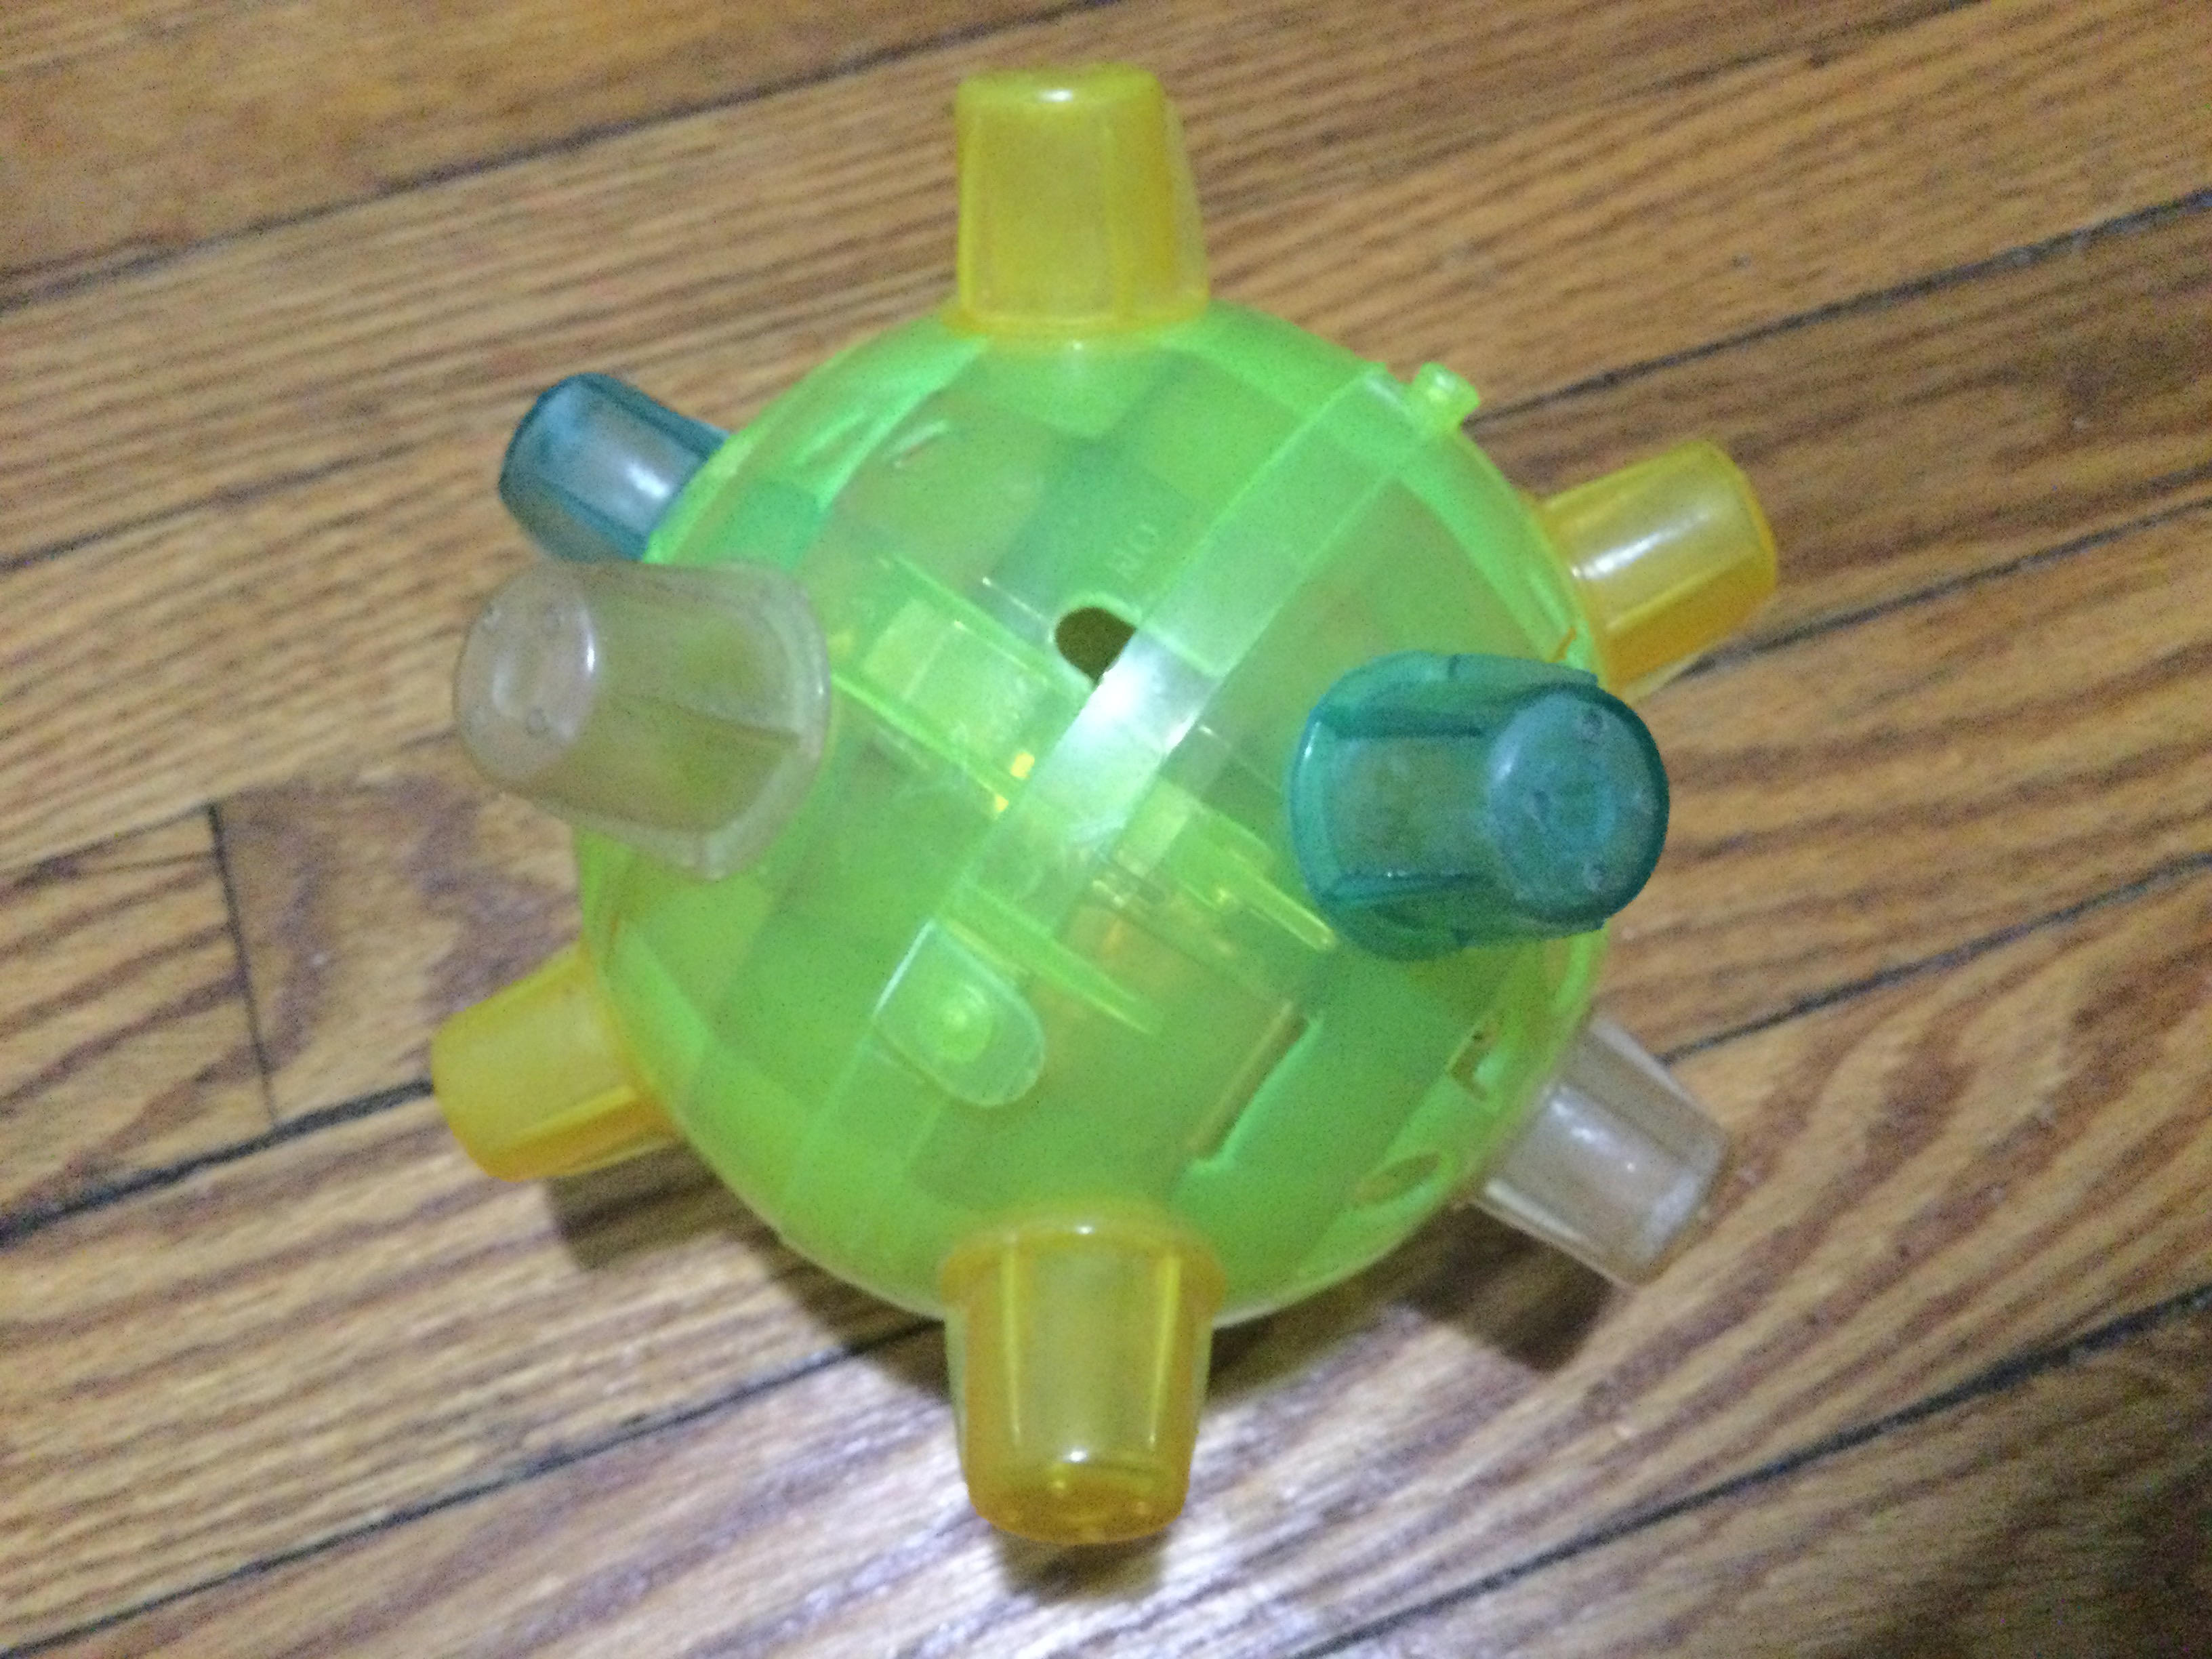 Bumble Ball, Toys Wiki